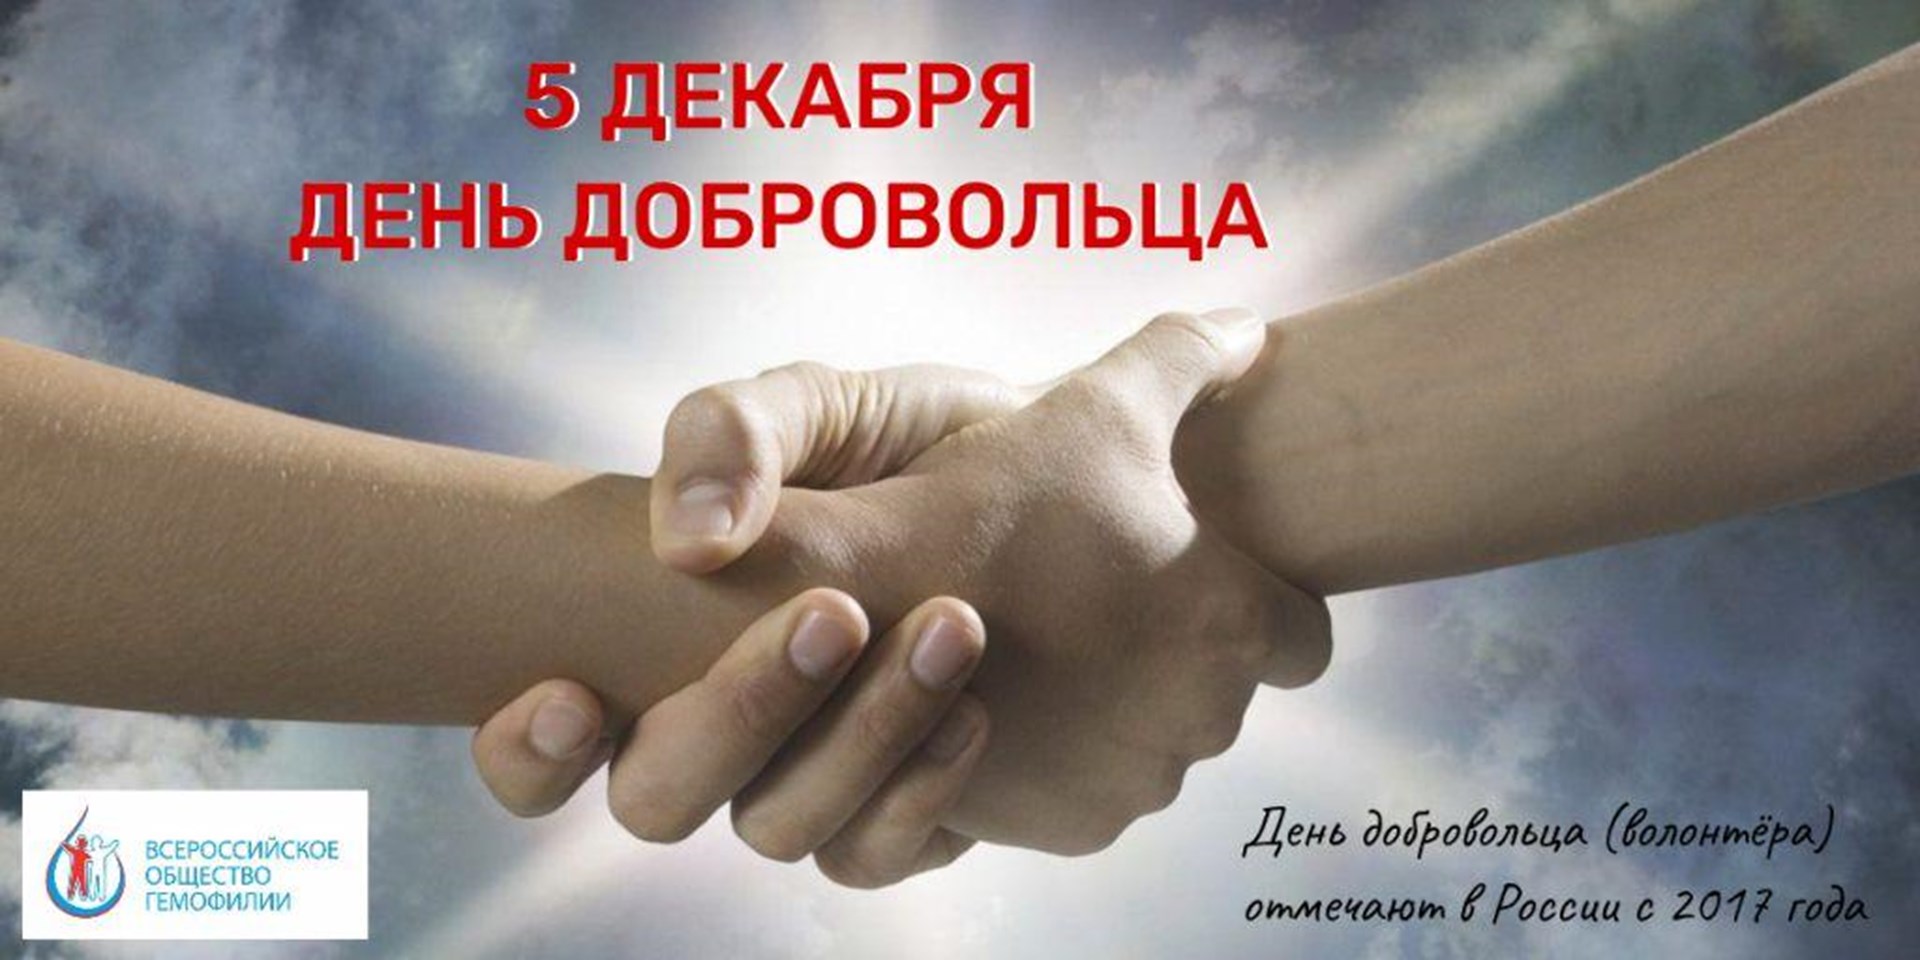 Спасибо всем активистам Всероссийского общества гемофилии